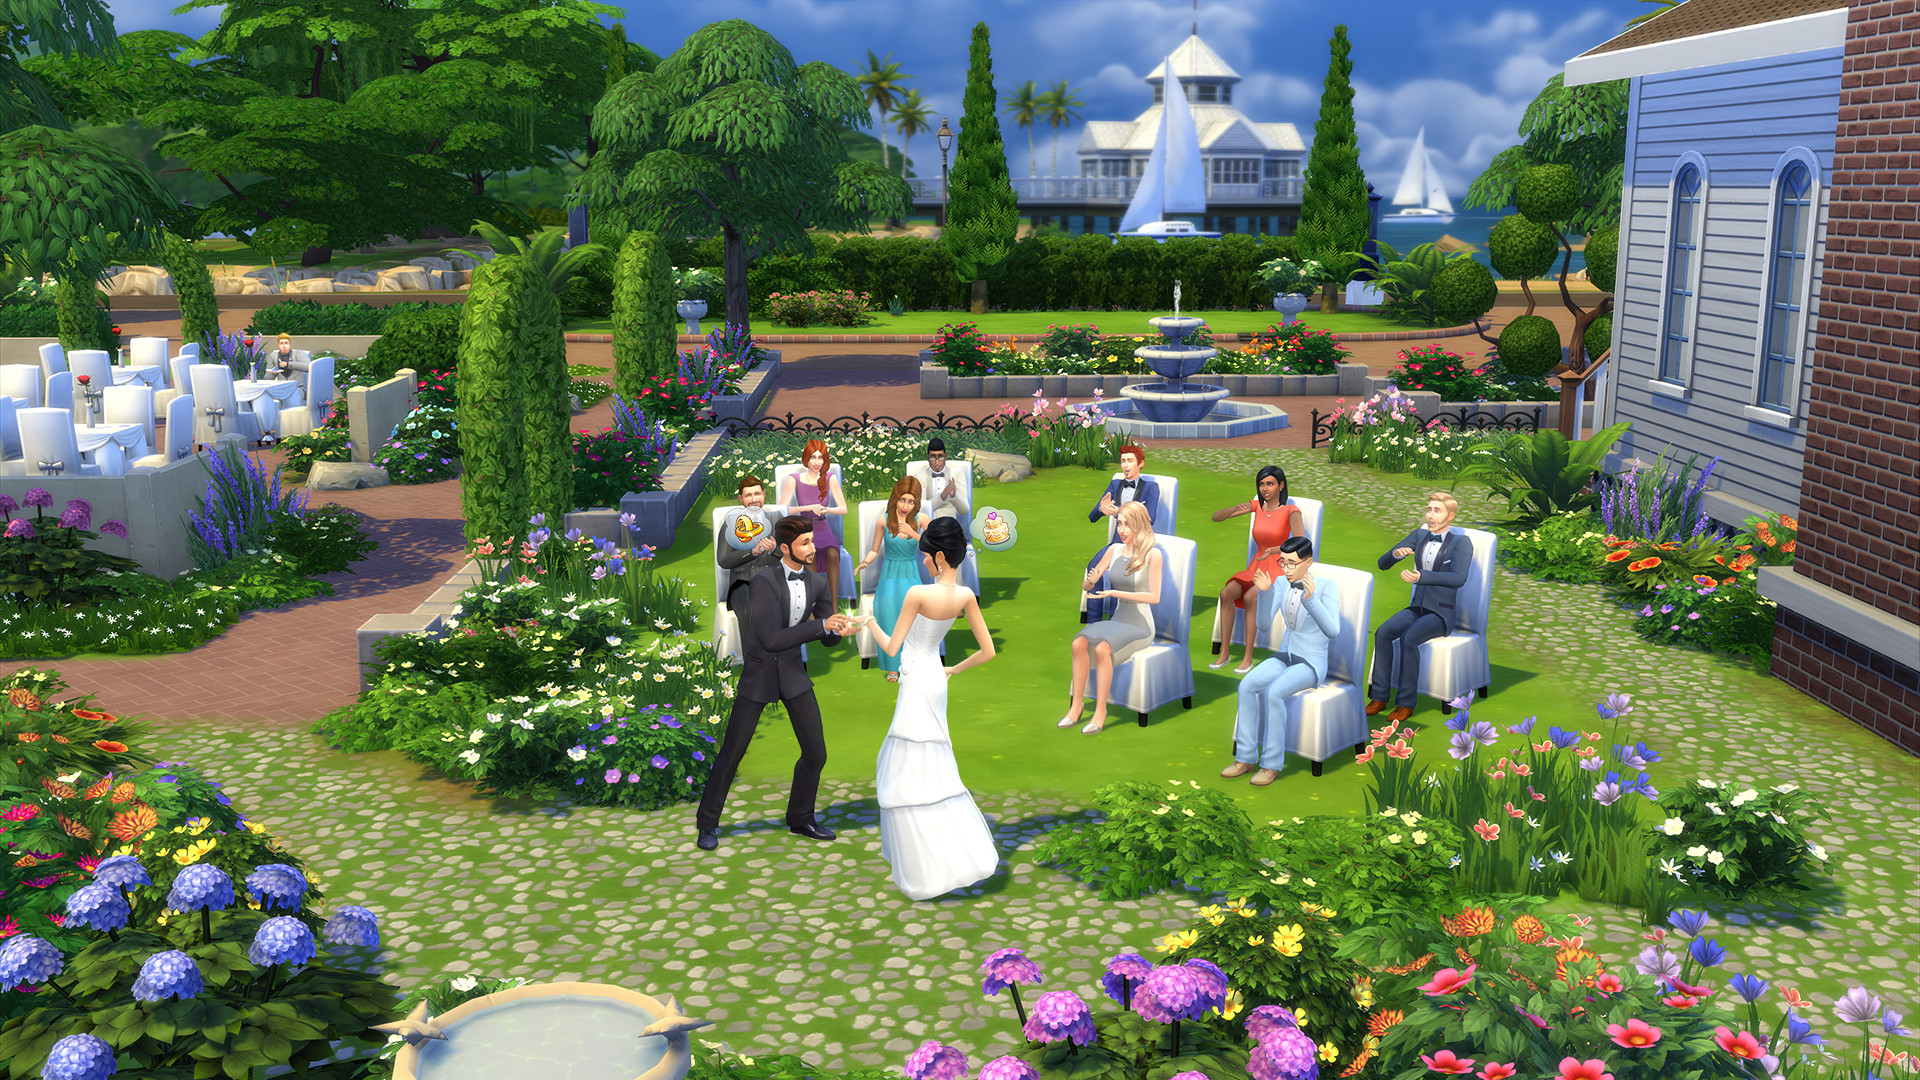 模拟人生4豪华版 The Sims 4 Deluxe Edition-浩然单机游戏 | haorangame.com